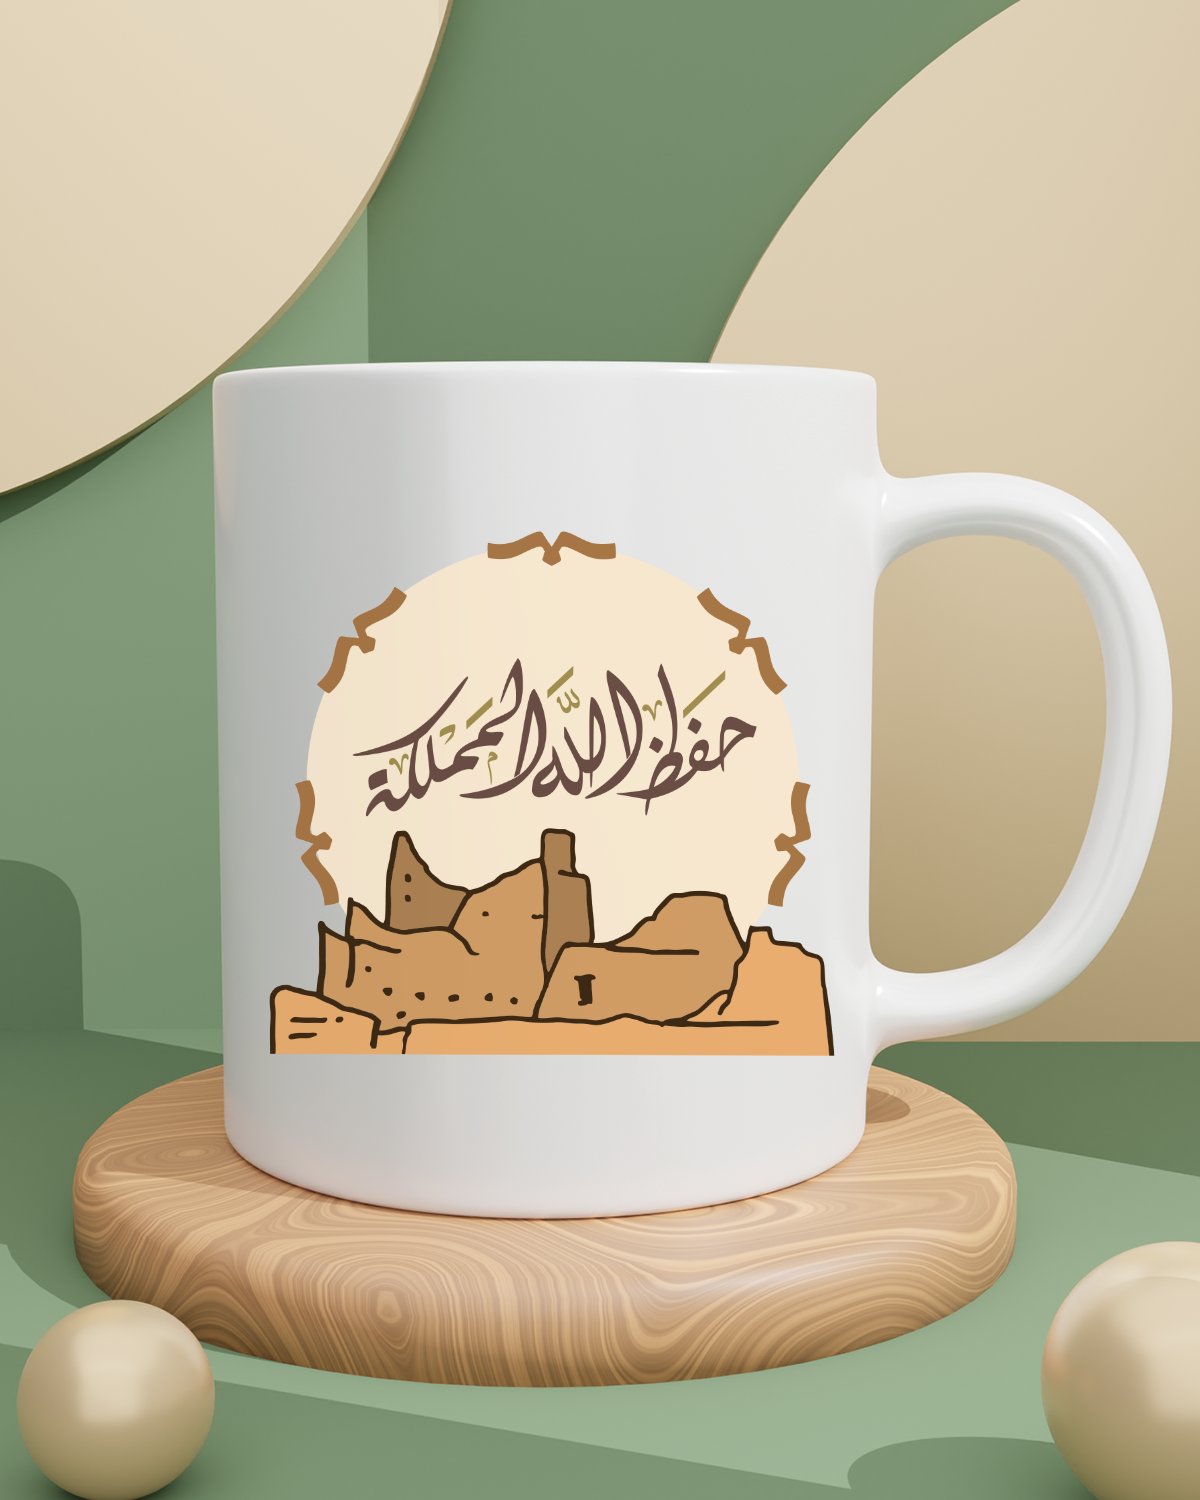 Foundation Day Mug (May Allah Protect the Kingdom)